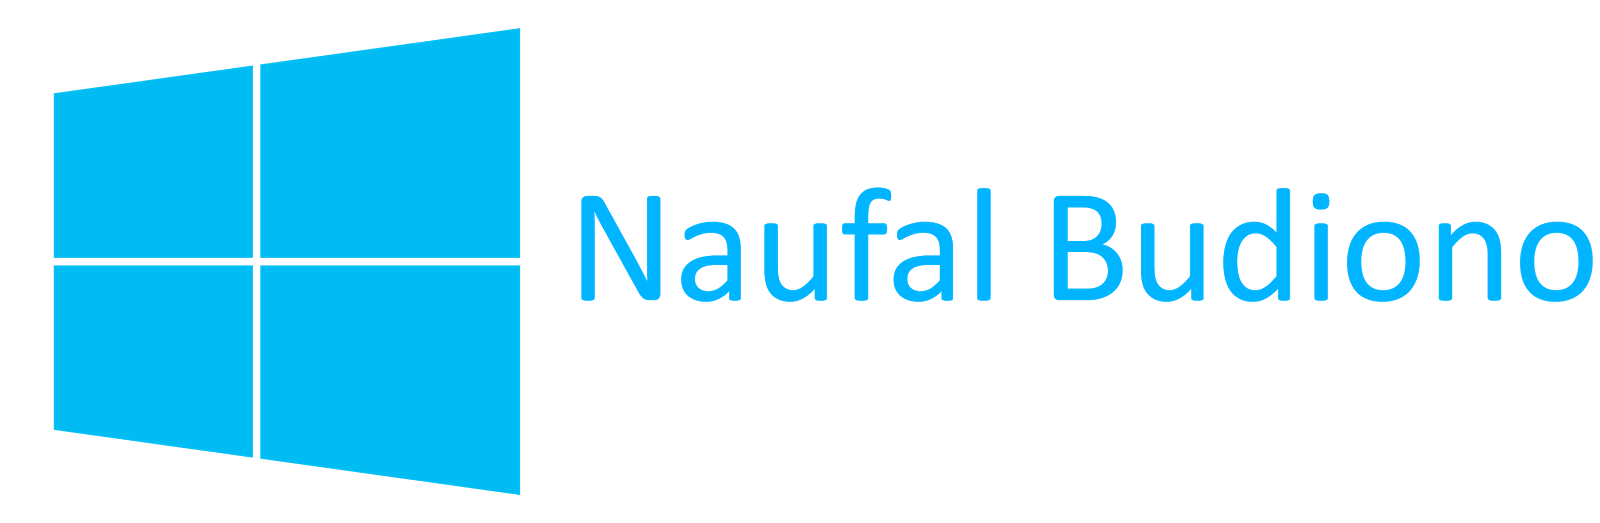 Blog Naufal Budiono